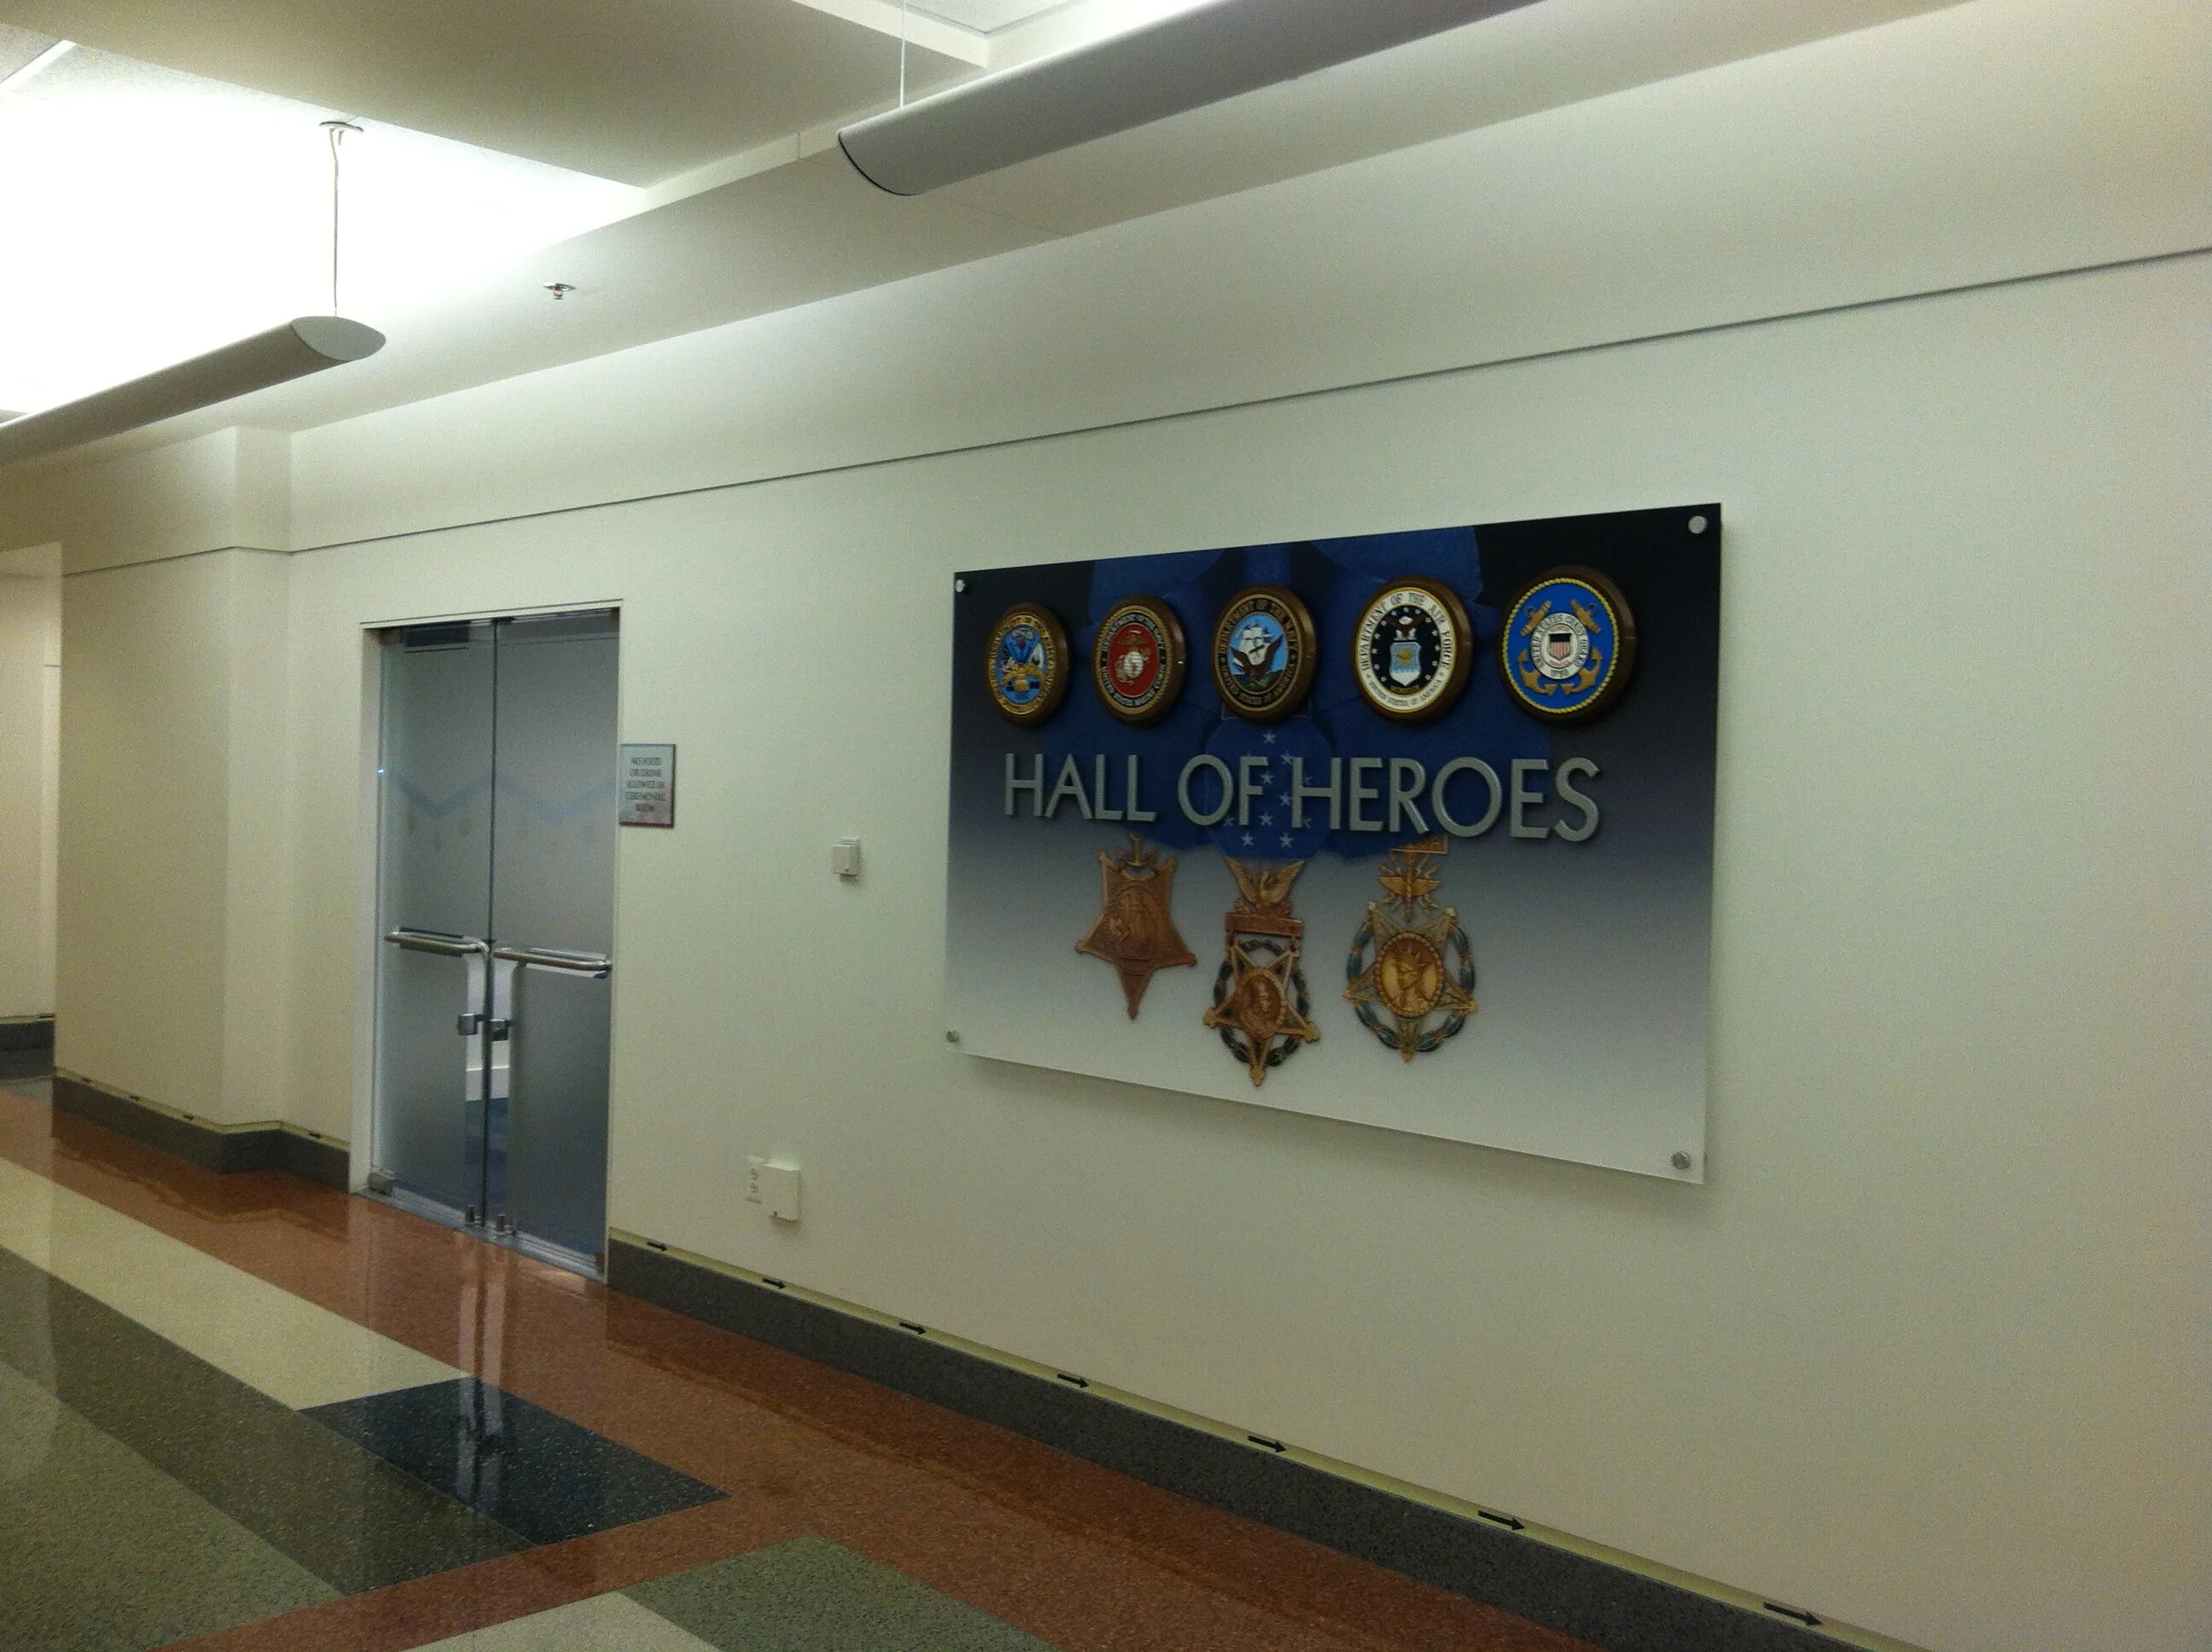 Hall of heroes. Hall of Heroes в Пентагоне. Зал героев (Hall of Heroes) в Пентагоне;. Коридоры Пентагона. Hall of Heroes Pentagon.